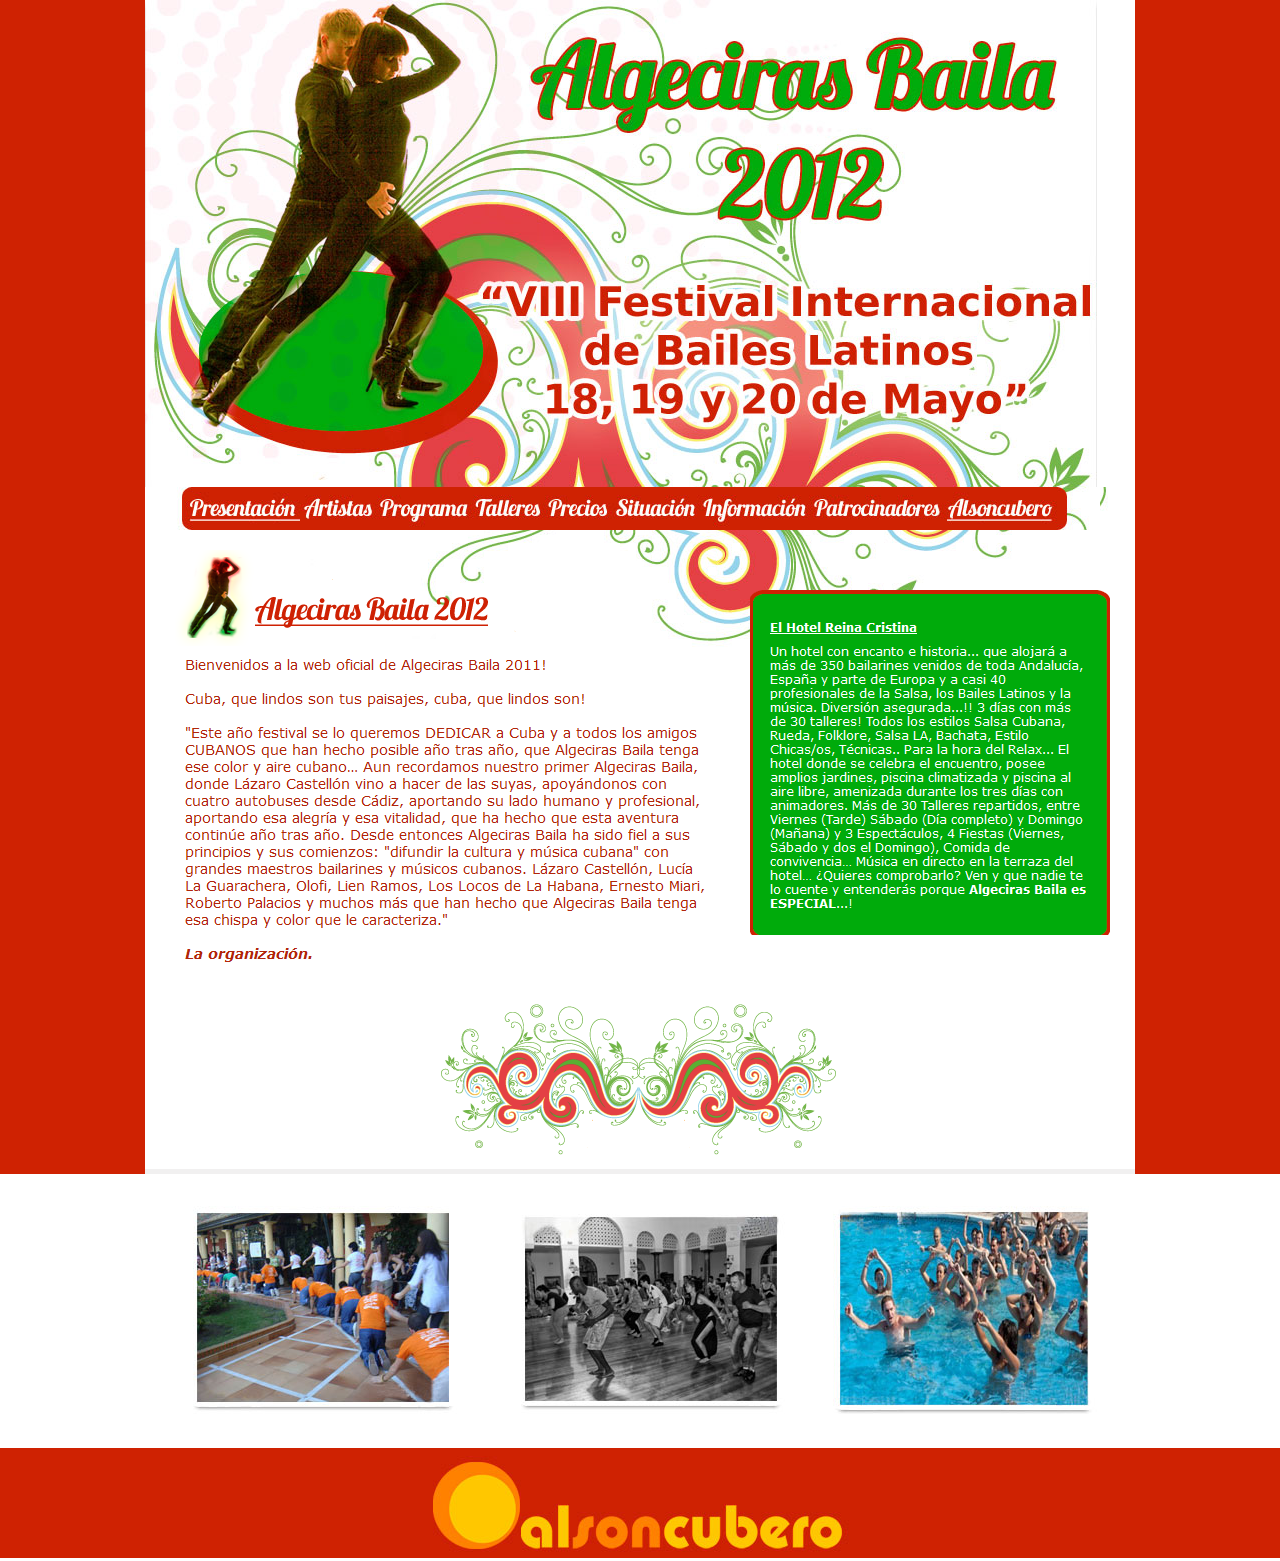 Algeciras Baila 2012 - 18, 19 y 20 de Mayo. Html, Css, Dreamweaver, Photoshop. Año 2012